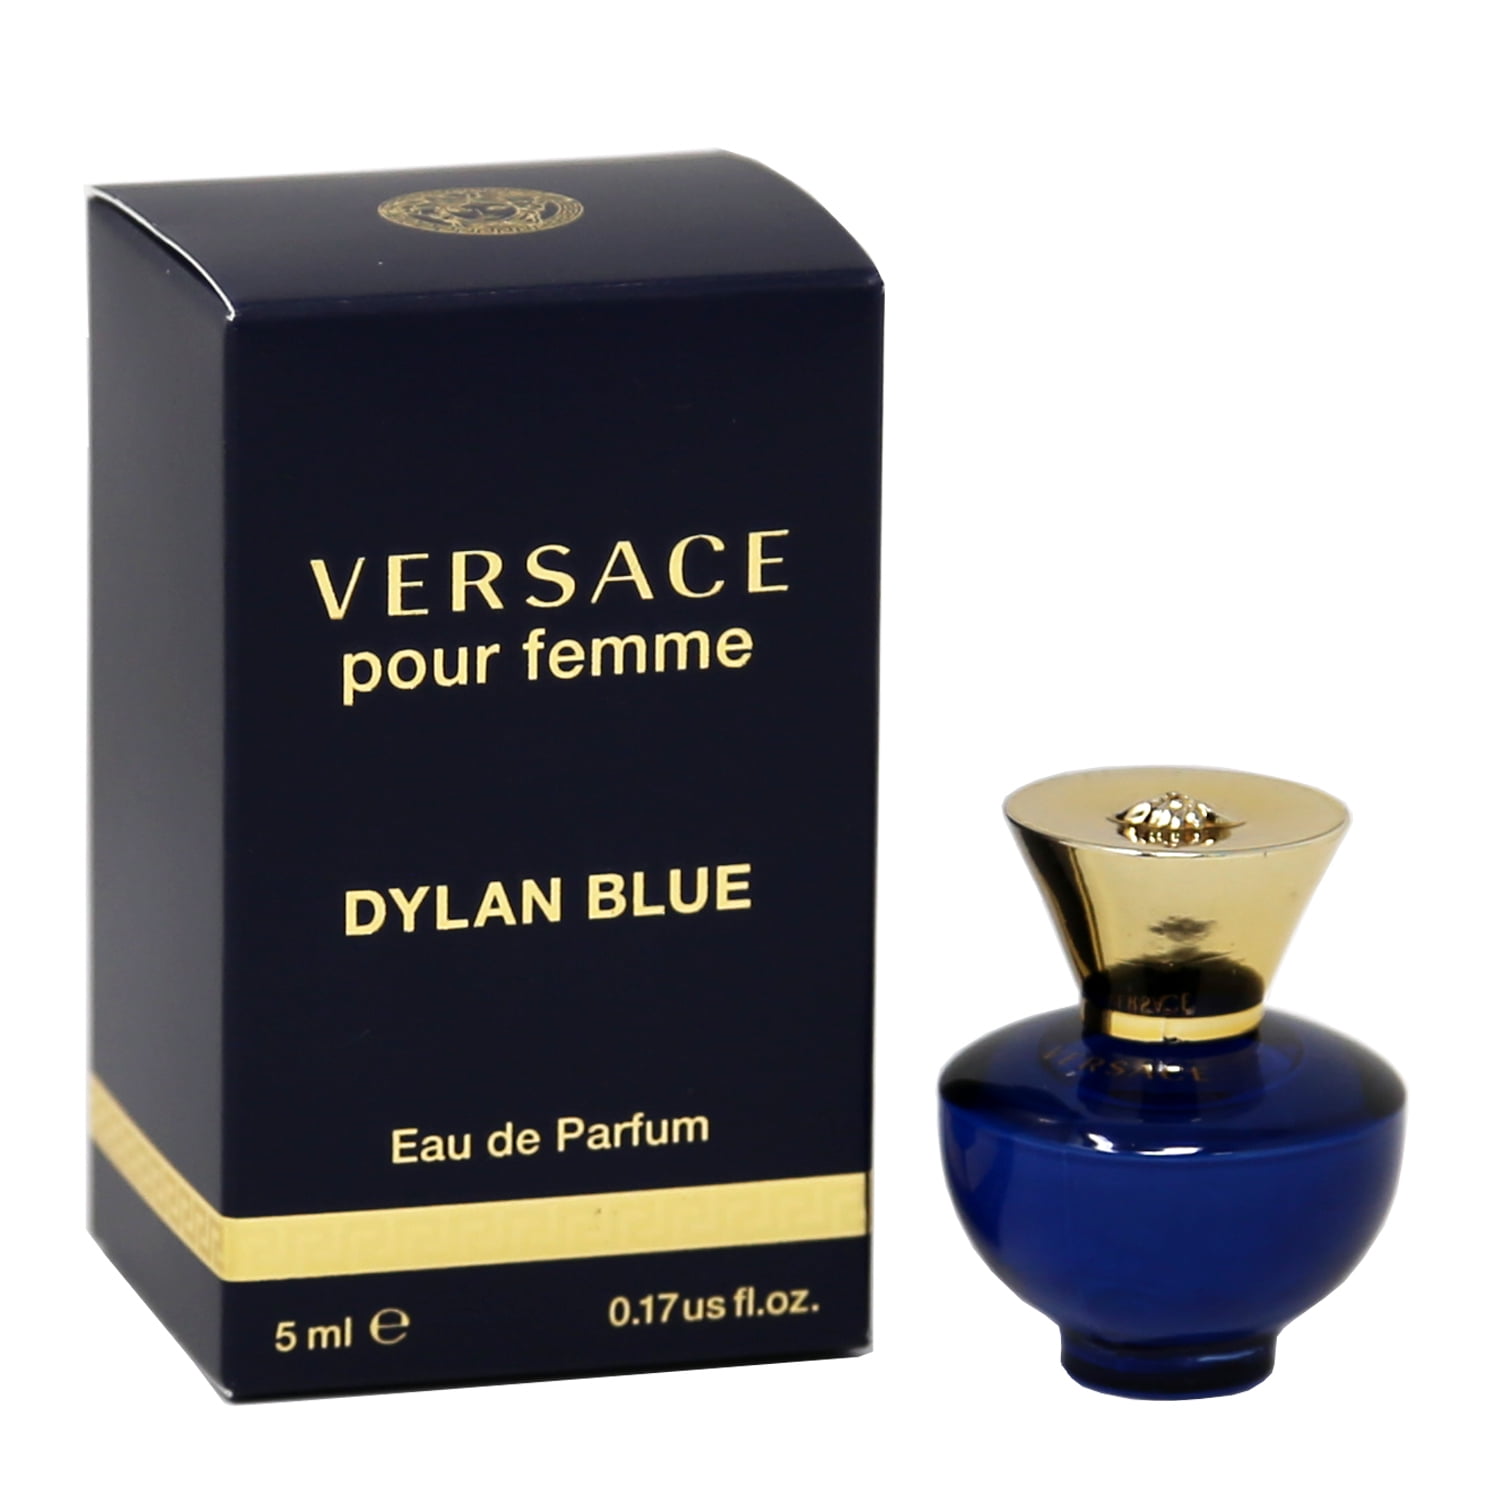 Versace Dylan Blue EDT, Eros Men EDT, Man Eau Fraiche EDT - 5ml 3PK Kit